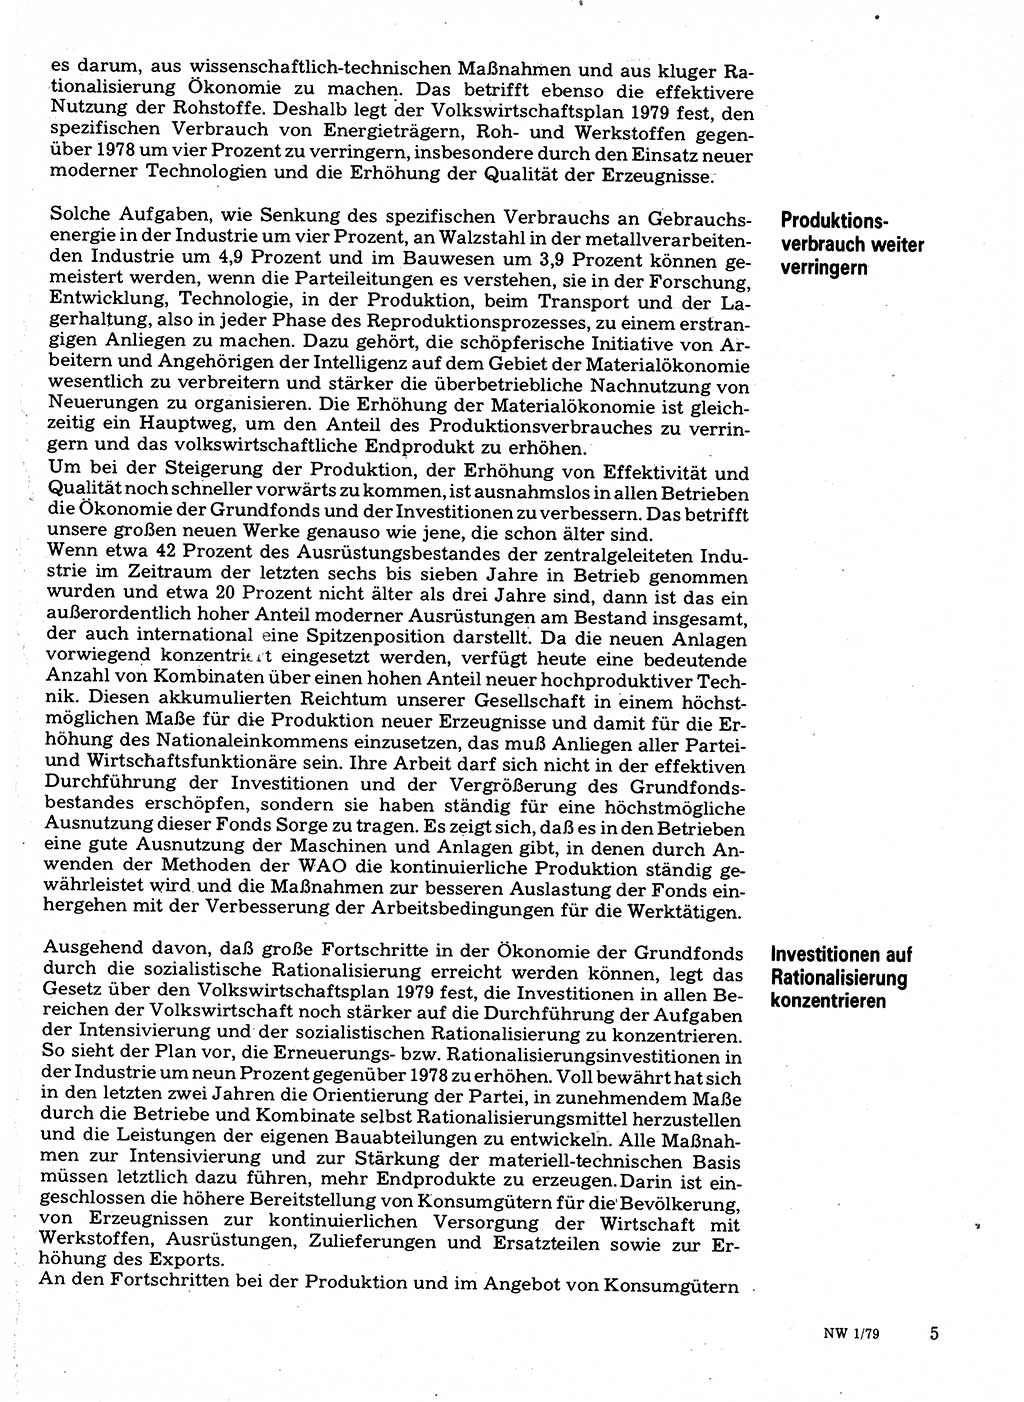 Neuer Weg (NW), Organ des Zentralkomitees (ZK) der SED (Sozialistische Einheitspartei Deutschlands) für Fragen des Parteilebens, 34. Jahrgang [Deutsche Demokratische Republik (DDR)] 1979, Seite 5 (NW ZK SED DDR 1979, S. 5)